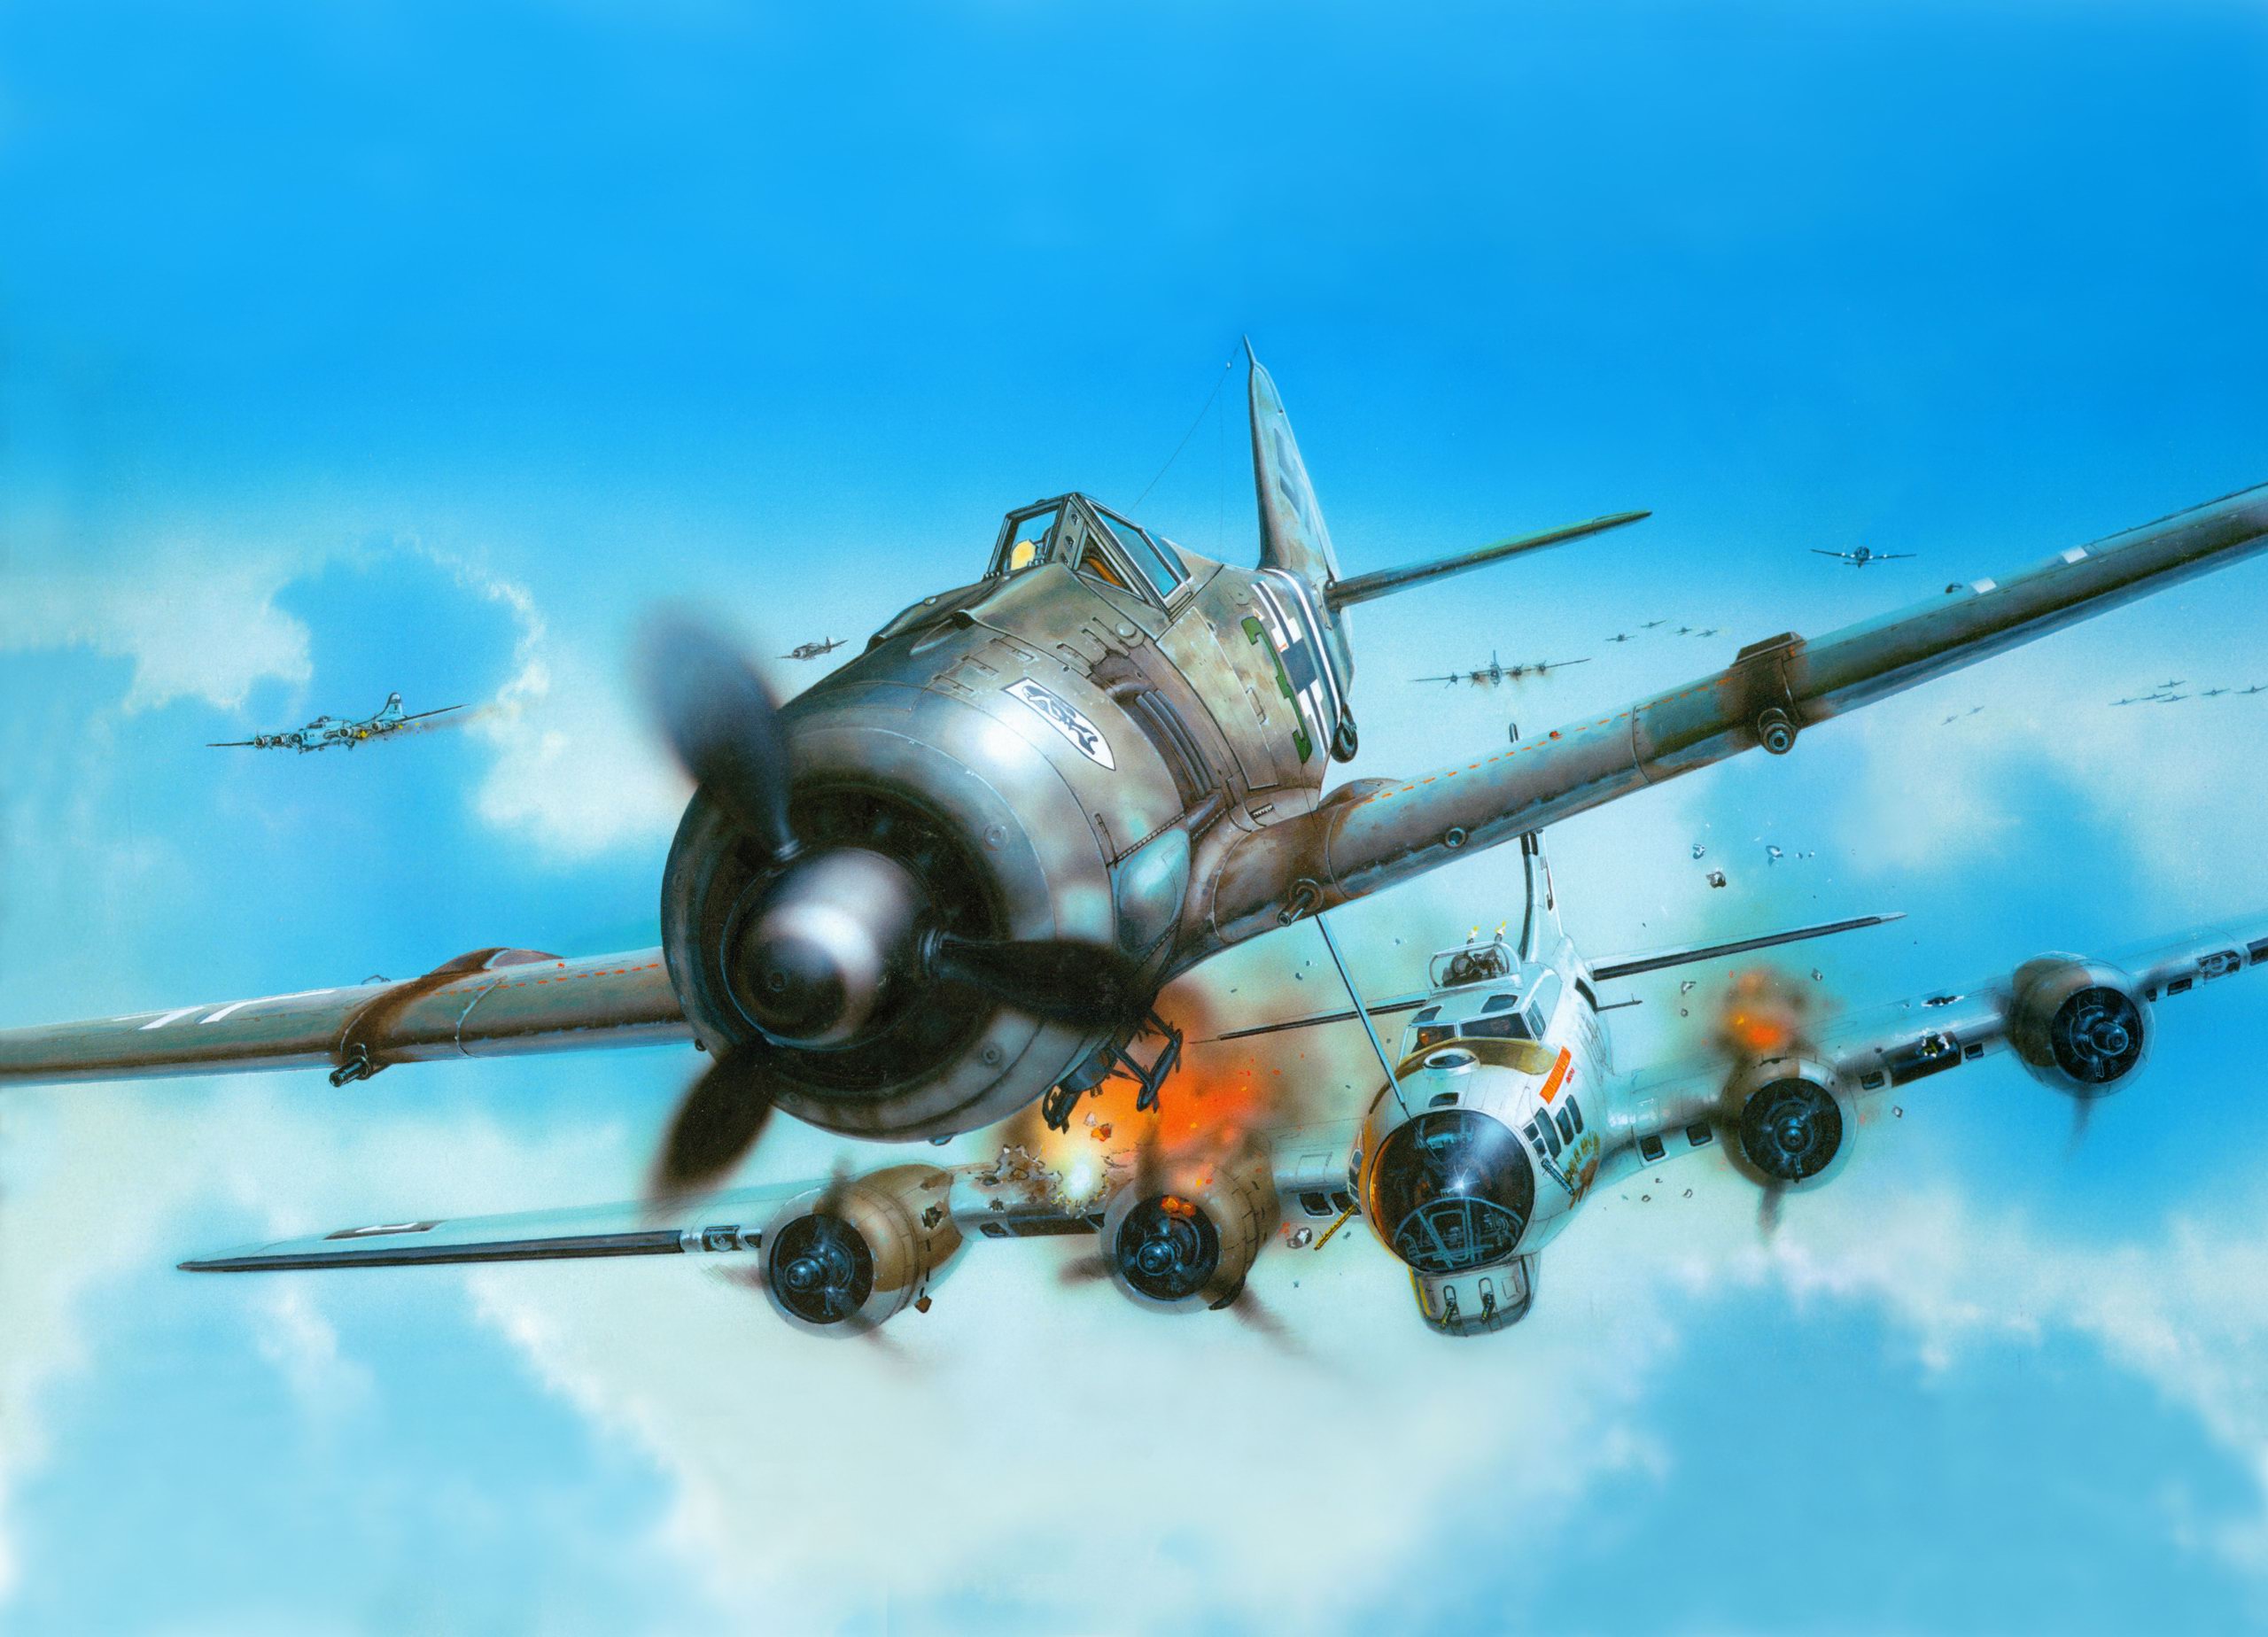 Picture, Plane, Fighter, Focke-wulf, Luftwaffe - Fw 190a 8 Eduard - HD Wallpaper 